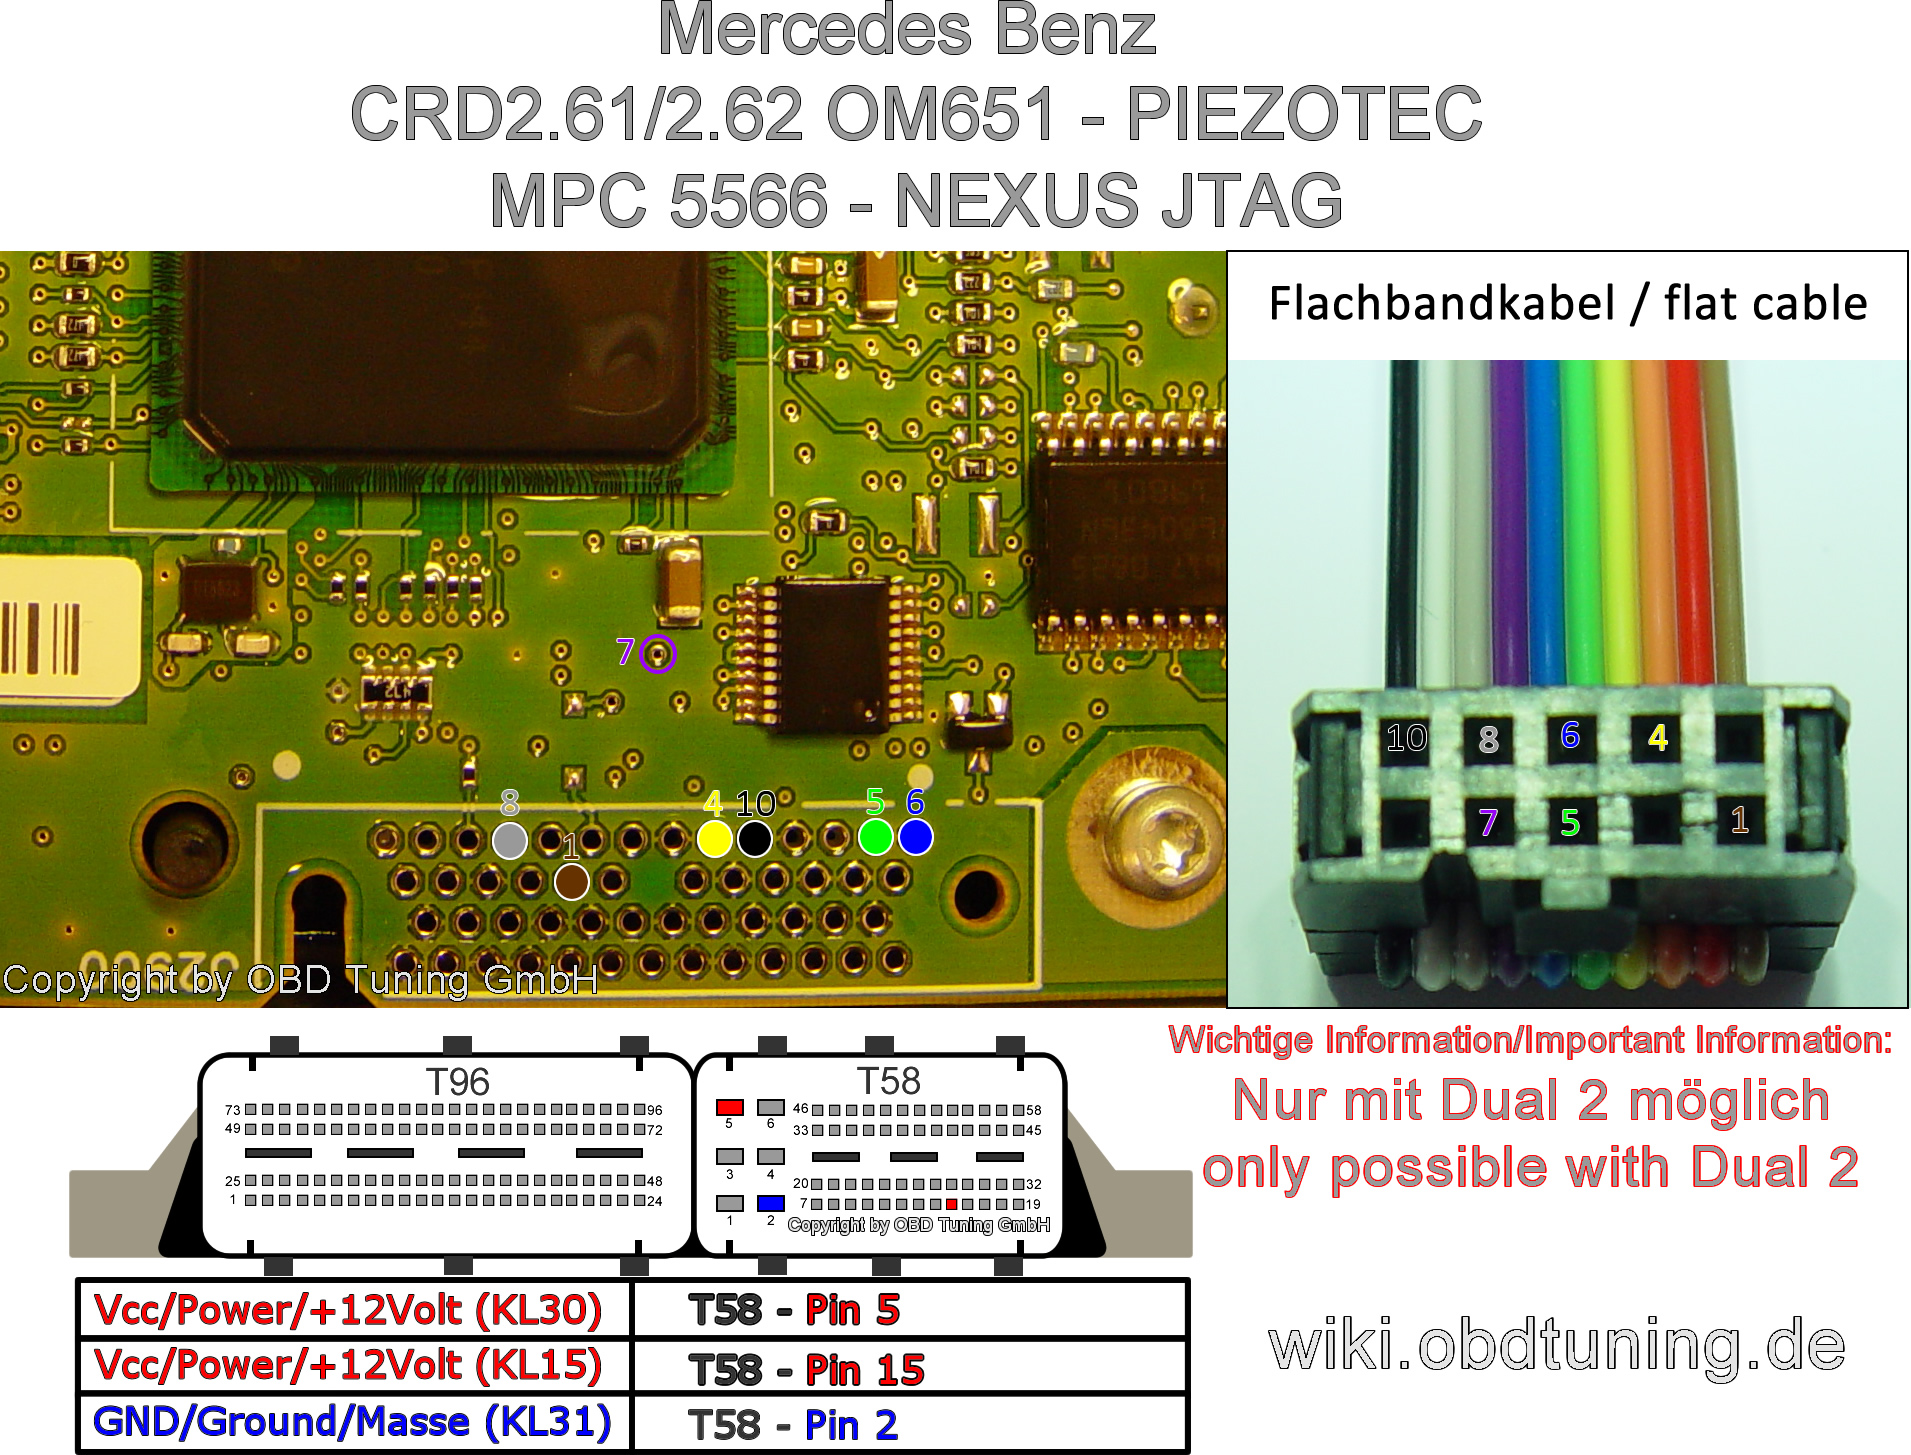 Mercedes CRD2.61 MPC5566 Nexus JTAG.jpg